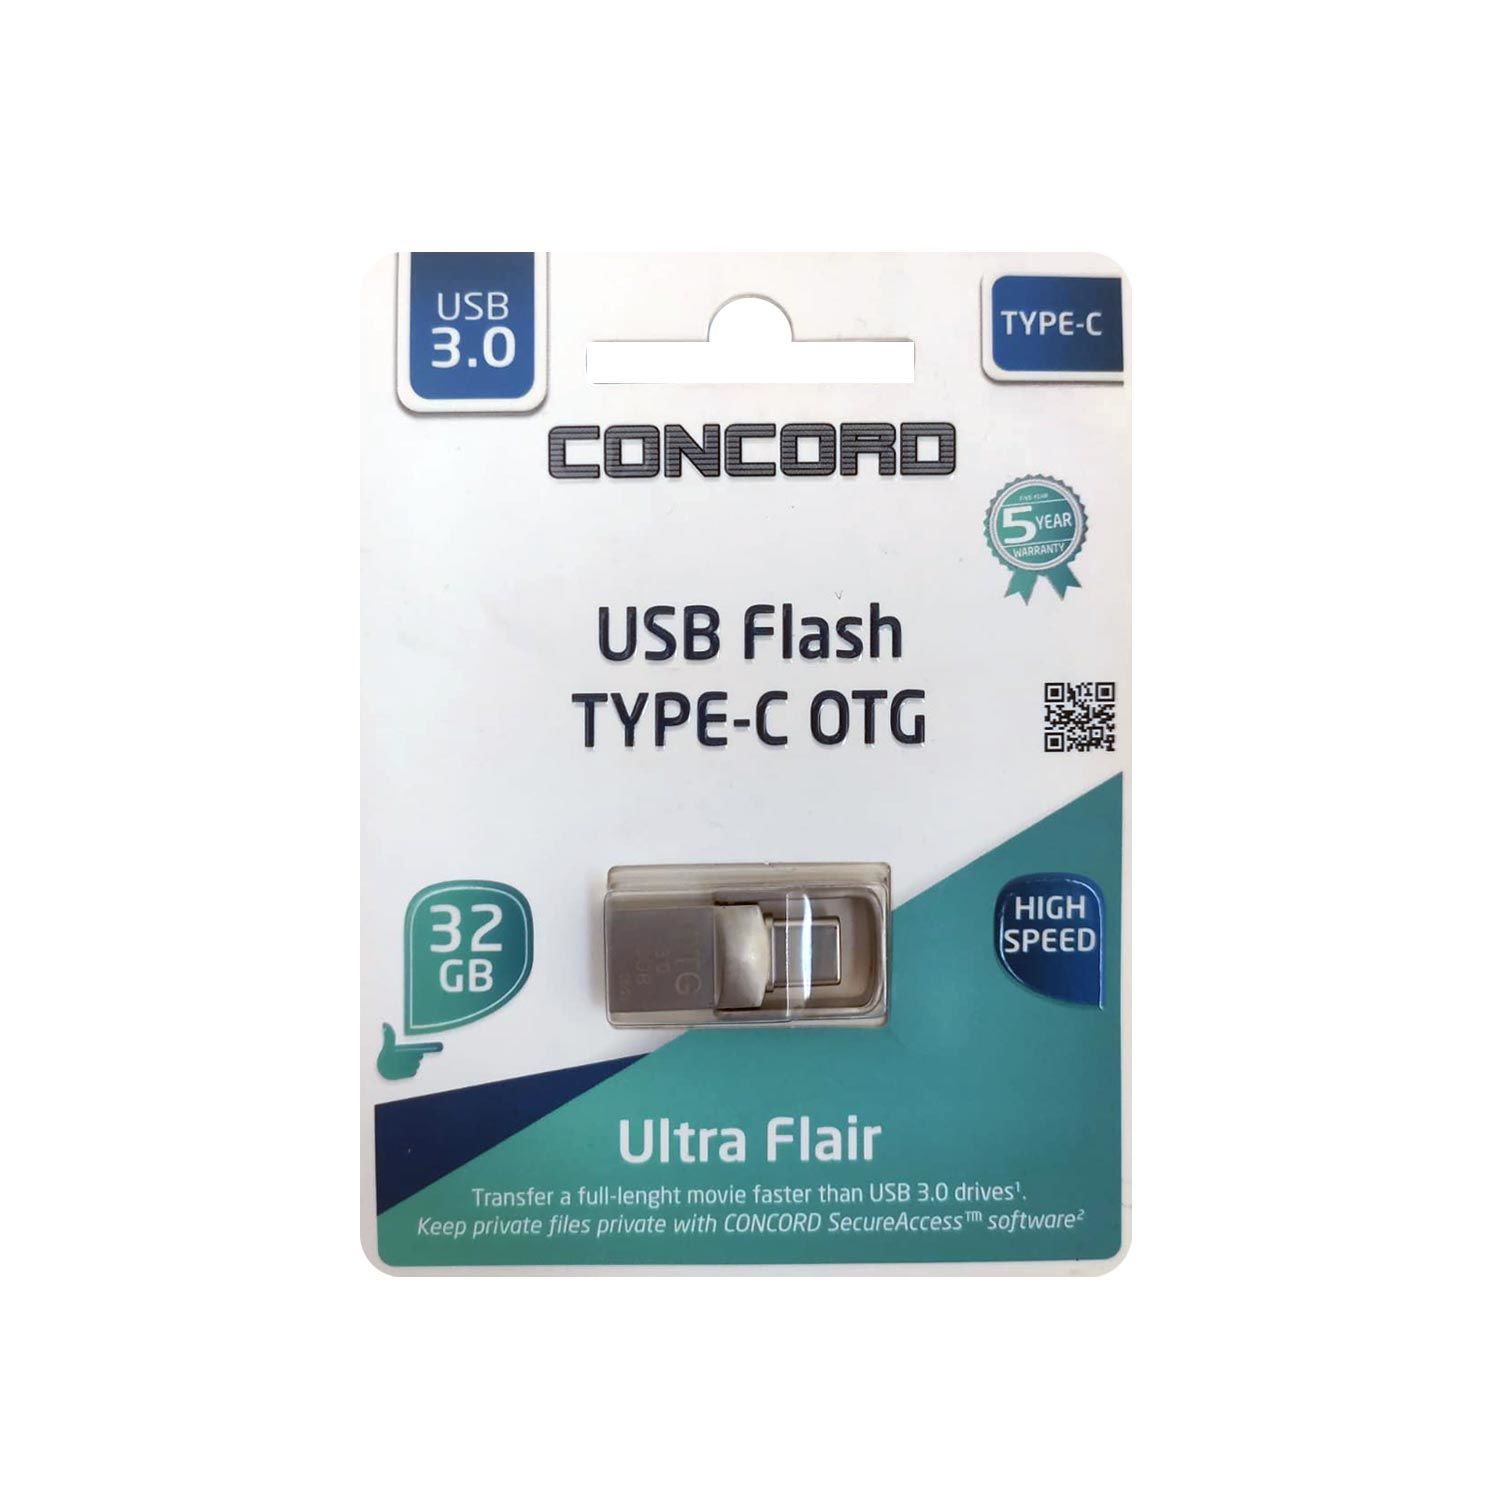 USB FLASH BELLEK 32GB 3.0 OTG TYPE-C METAL MİNİ CONCORD C-OTGT32